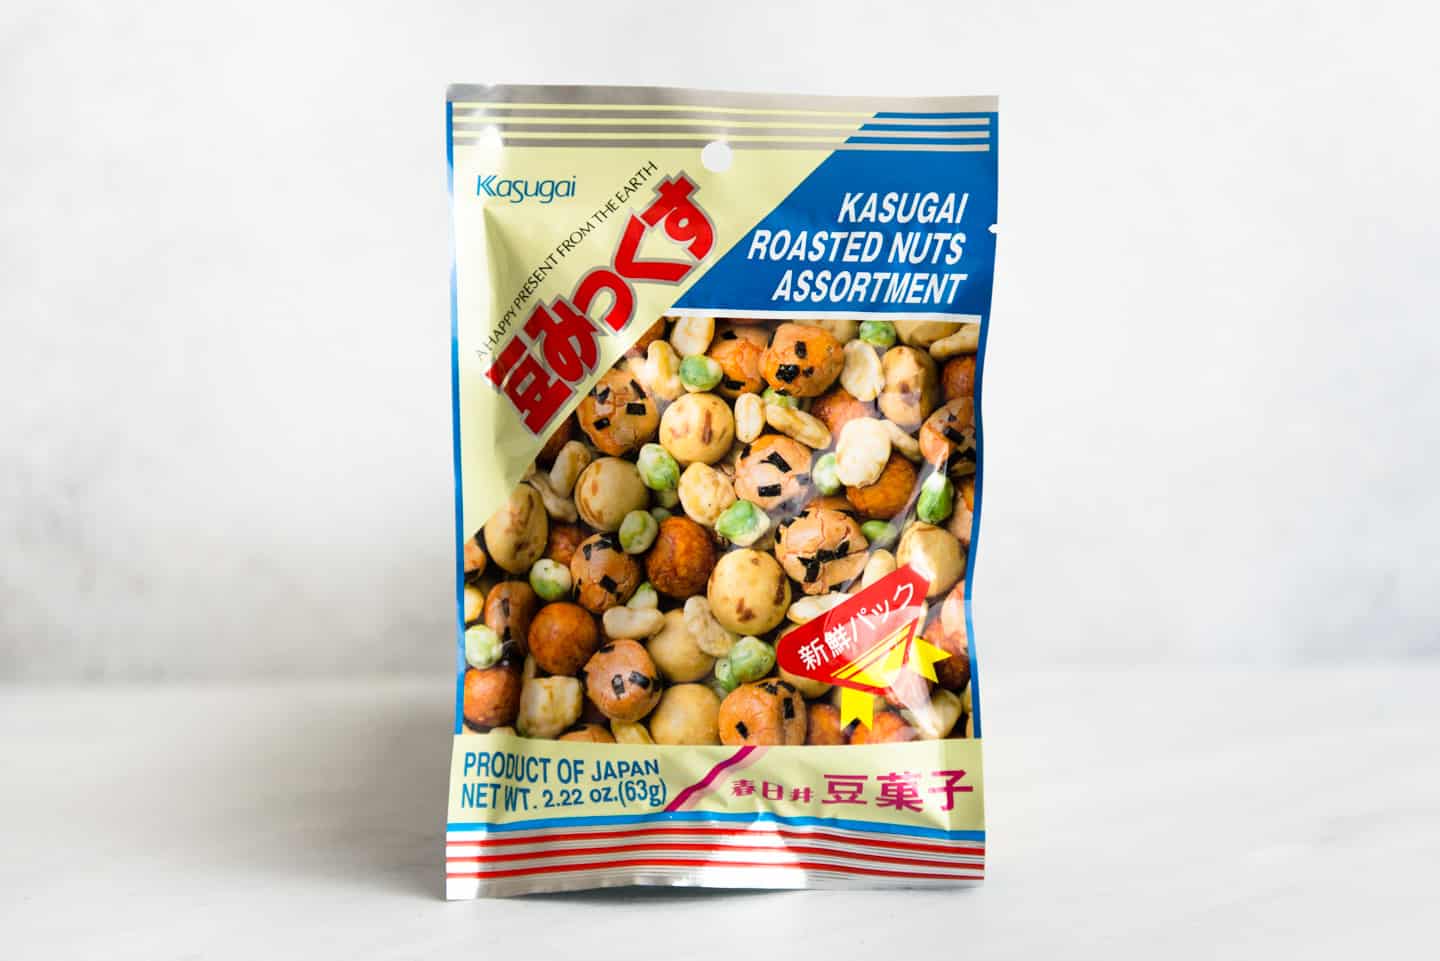 Kasugai Roasted Nuts